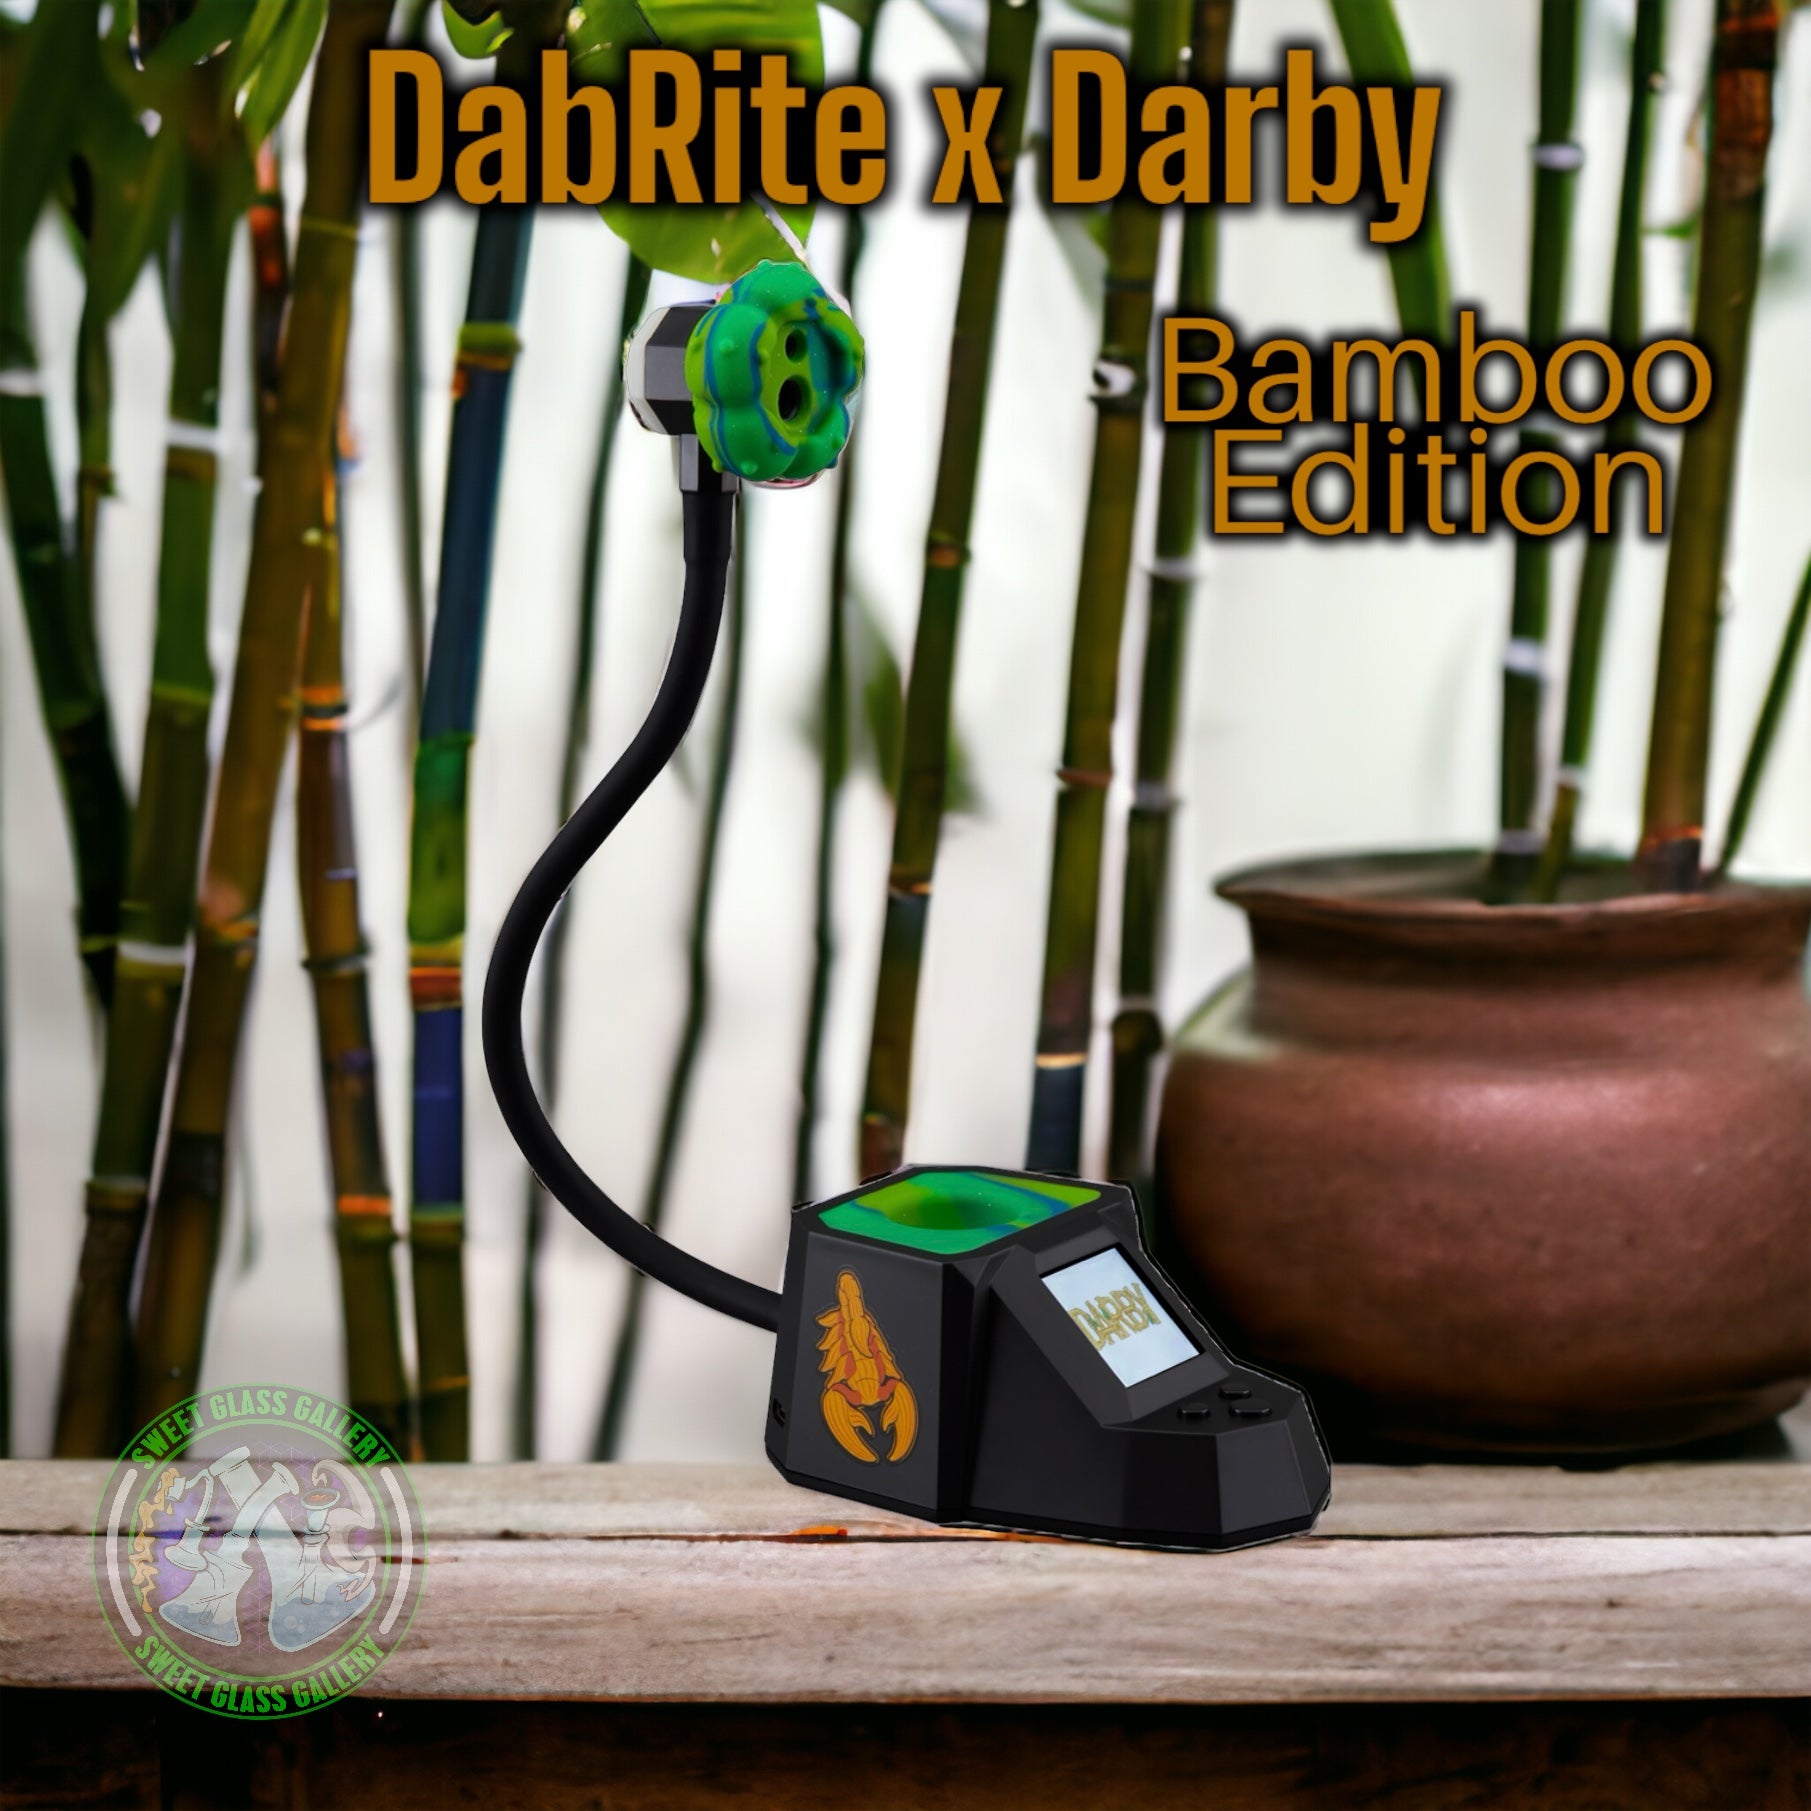 DabRite x Darby - Dab Rite Pro (Bamboo Edition)